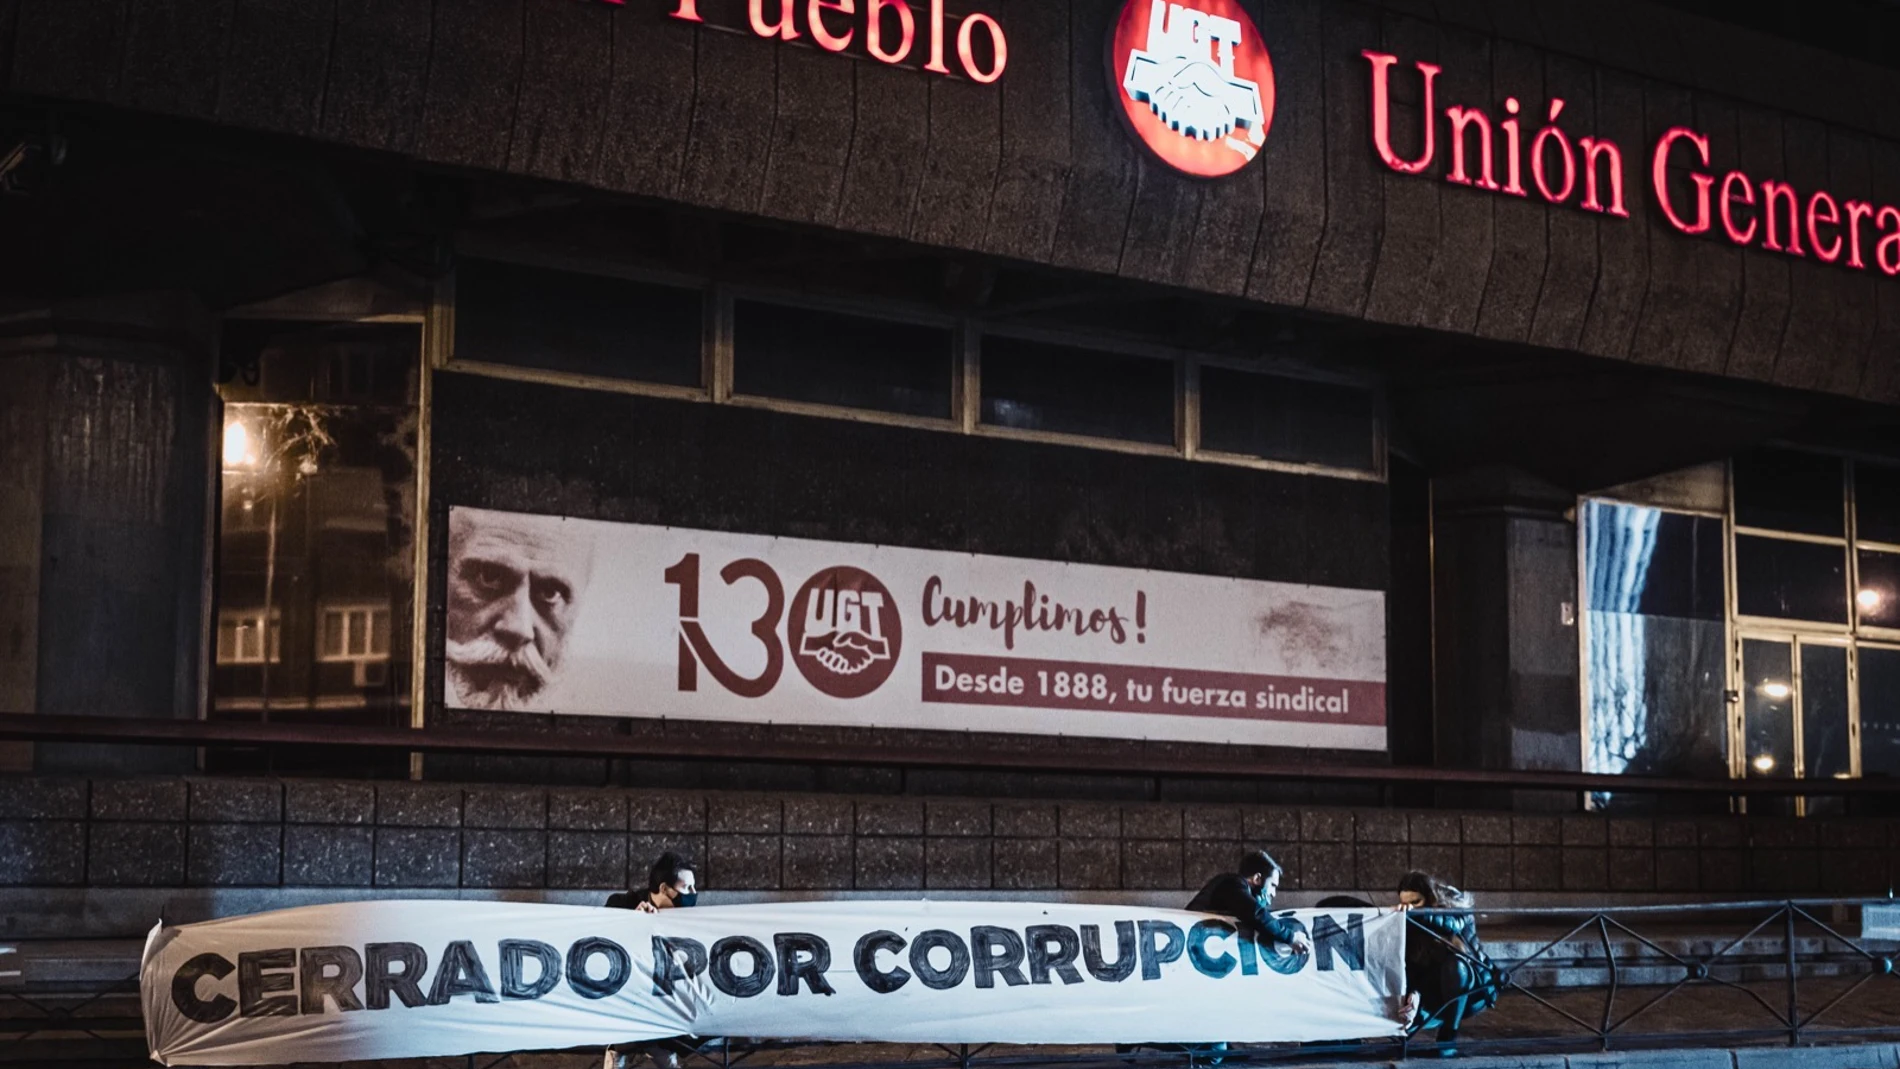 Pancarta en la valla de las puertas del sindicato de UGT de Madrid donde se puede leer "cerrado por corrupción"